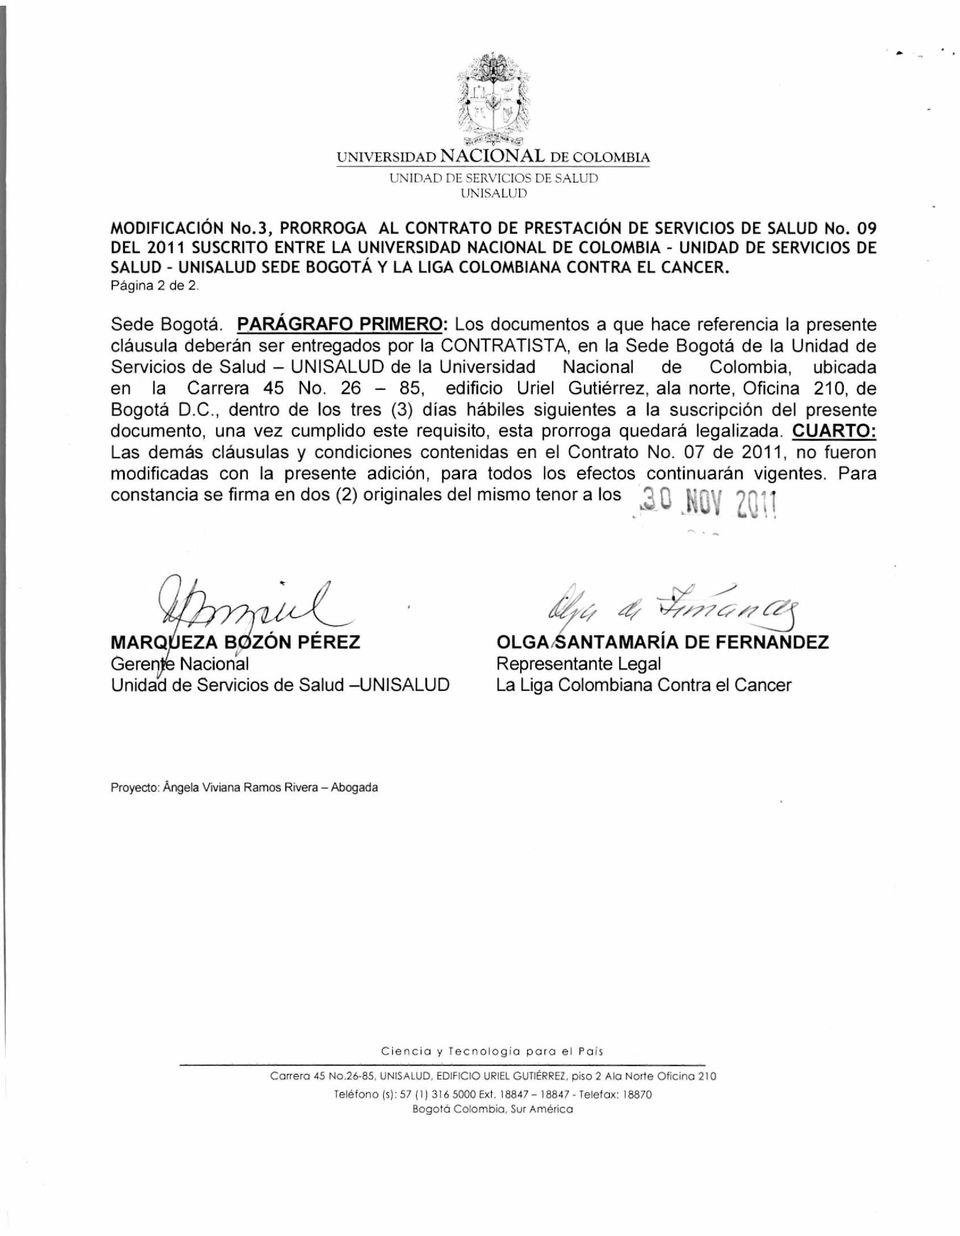 PARÁGRAFO PRIMERO: Los documentos a que hace referencia la presente cláusula deberán ser entregados por la CONTRATISTA, en la Sede Bogotá de la Unidad de Servicios de Salud UNISALUD de la Universidad